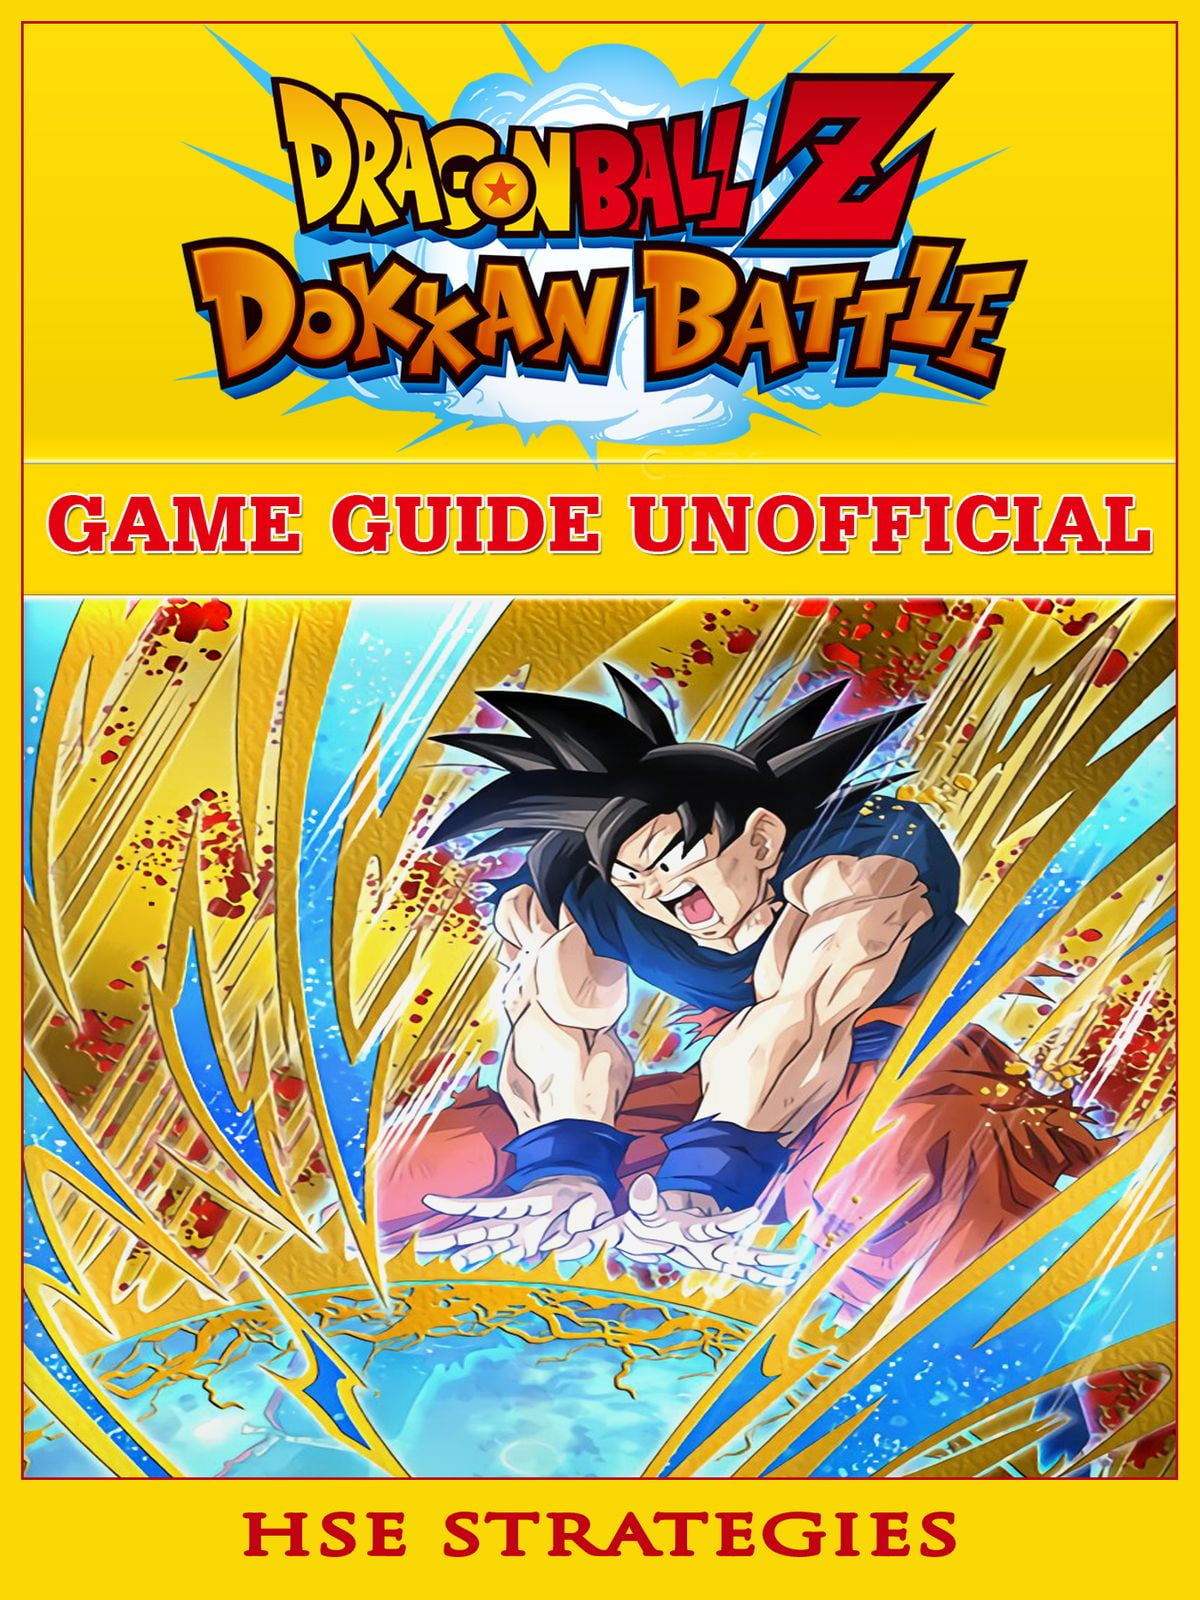 Dragon Ball Z Dokkan Battle Game Guide Unofficial - eBook - Walmart.com - Walmart.com